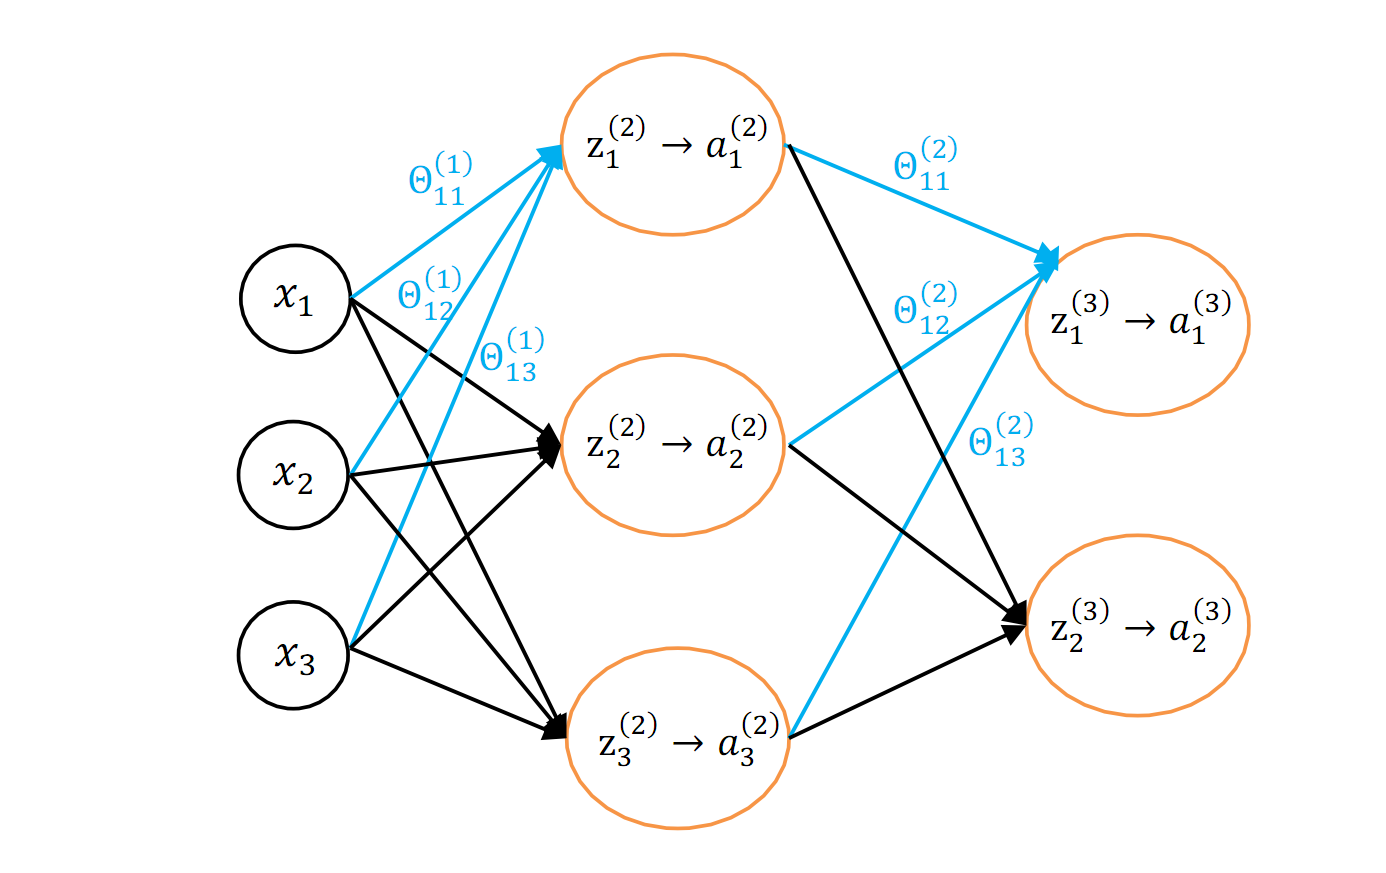 图 1.1 一个简单的神经网络模型